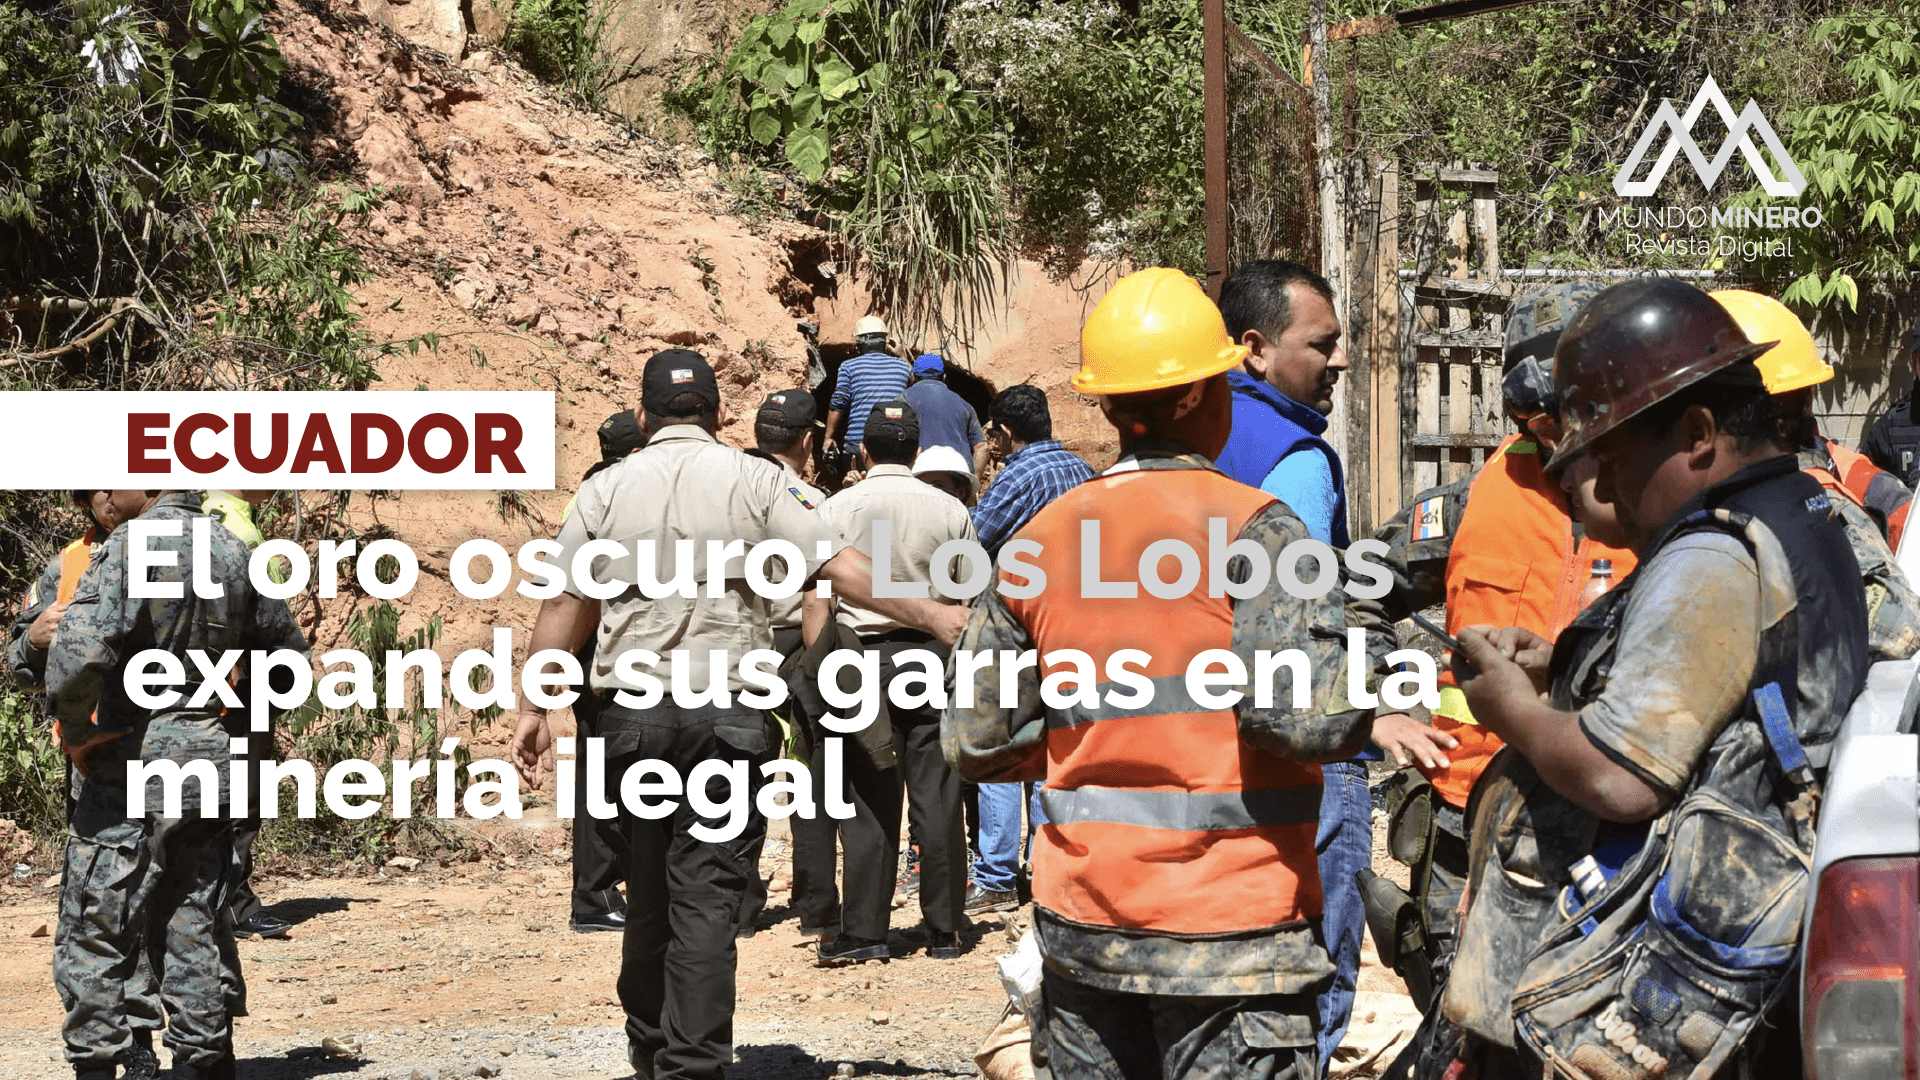 Mundo Minero - El oro oscuro - Los Lobos expande garras minería ilegal